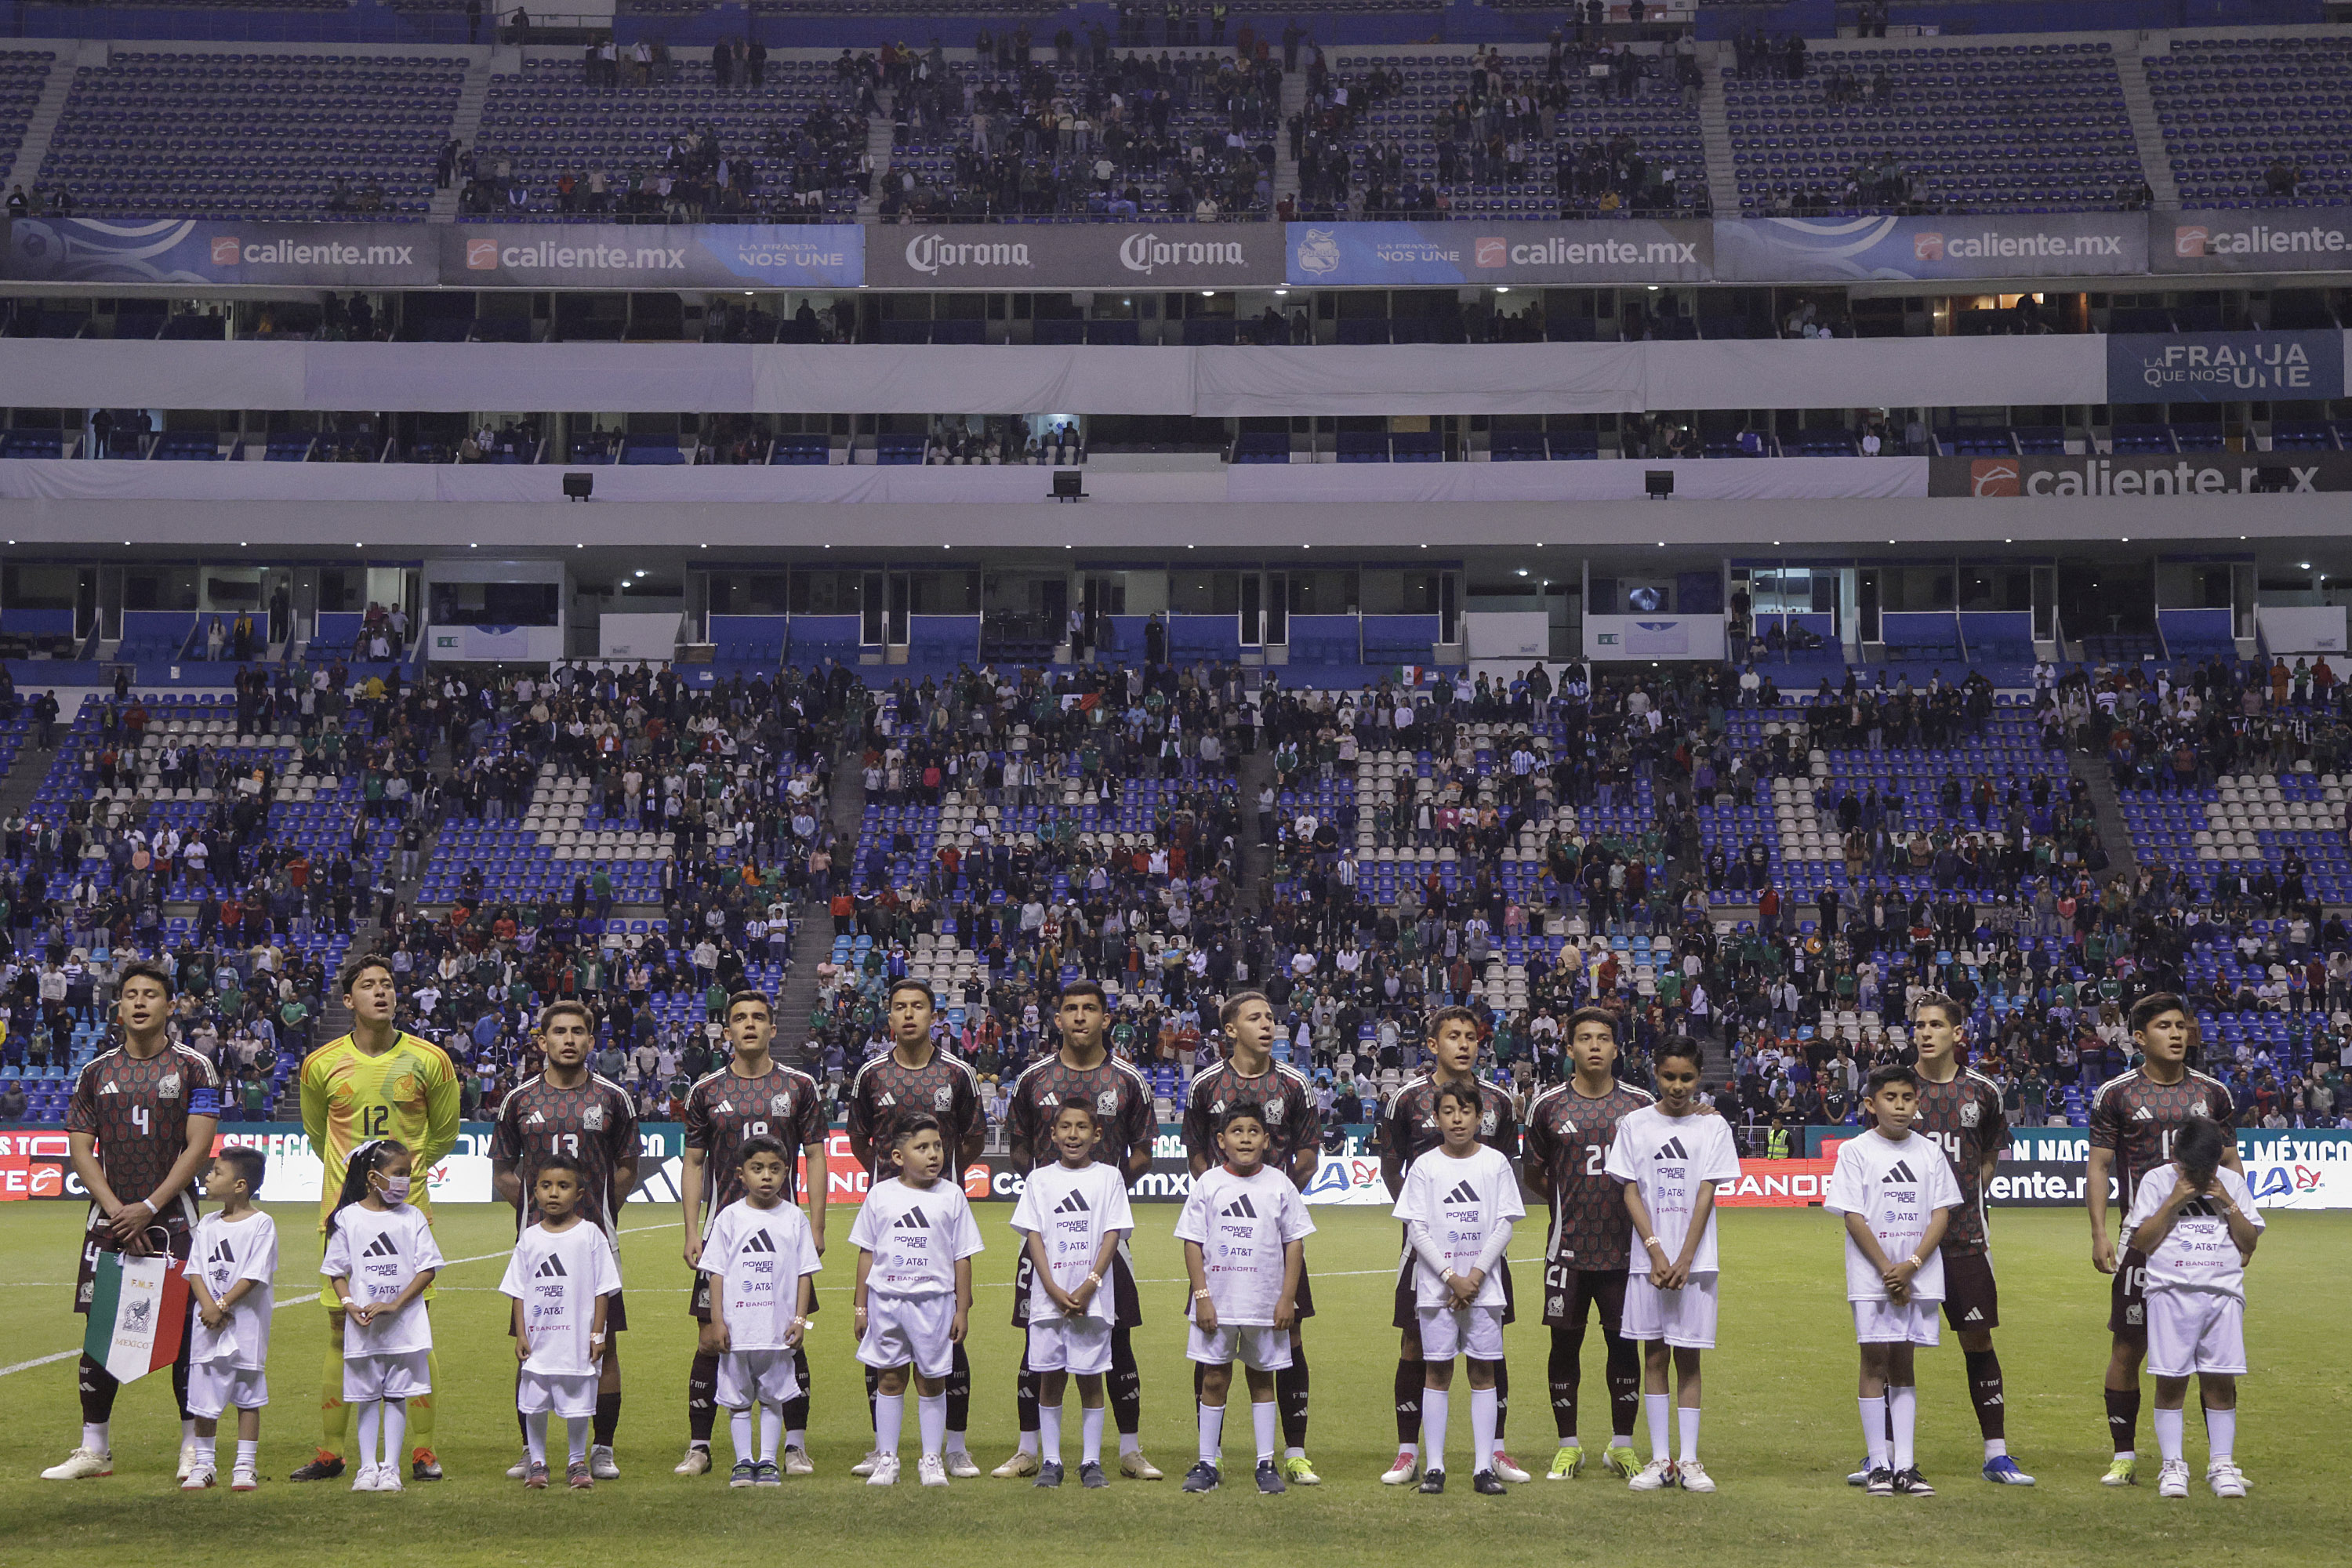 Selección Mexicana y Topos FC unen fuerzas para las infancias con discapacidad visual